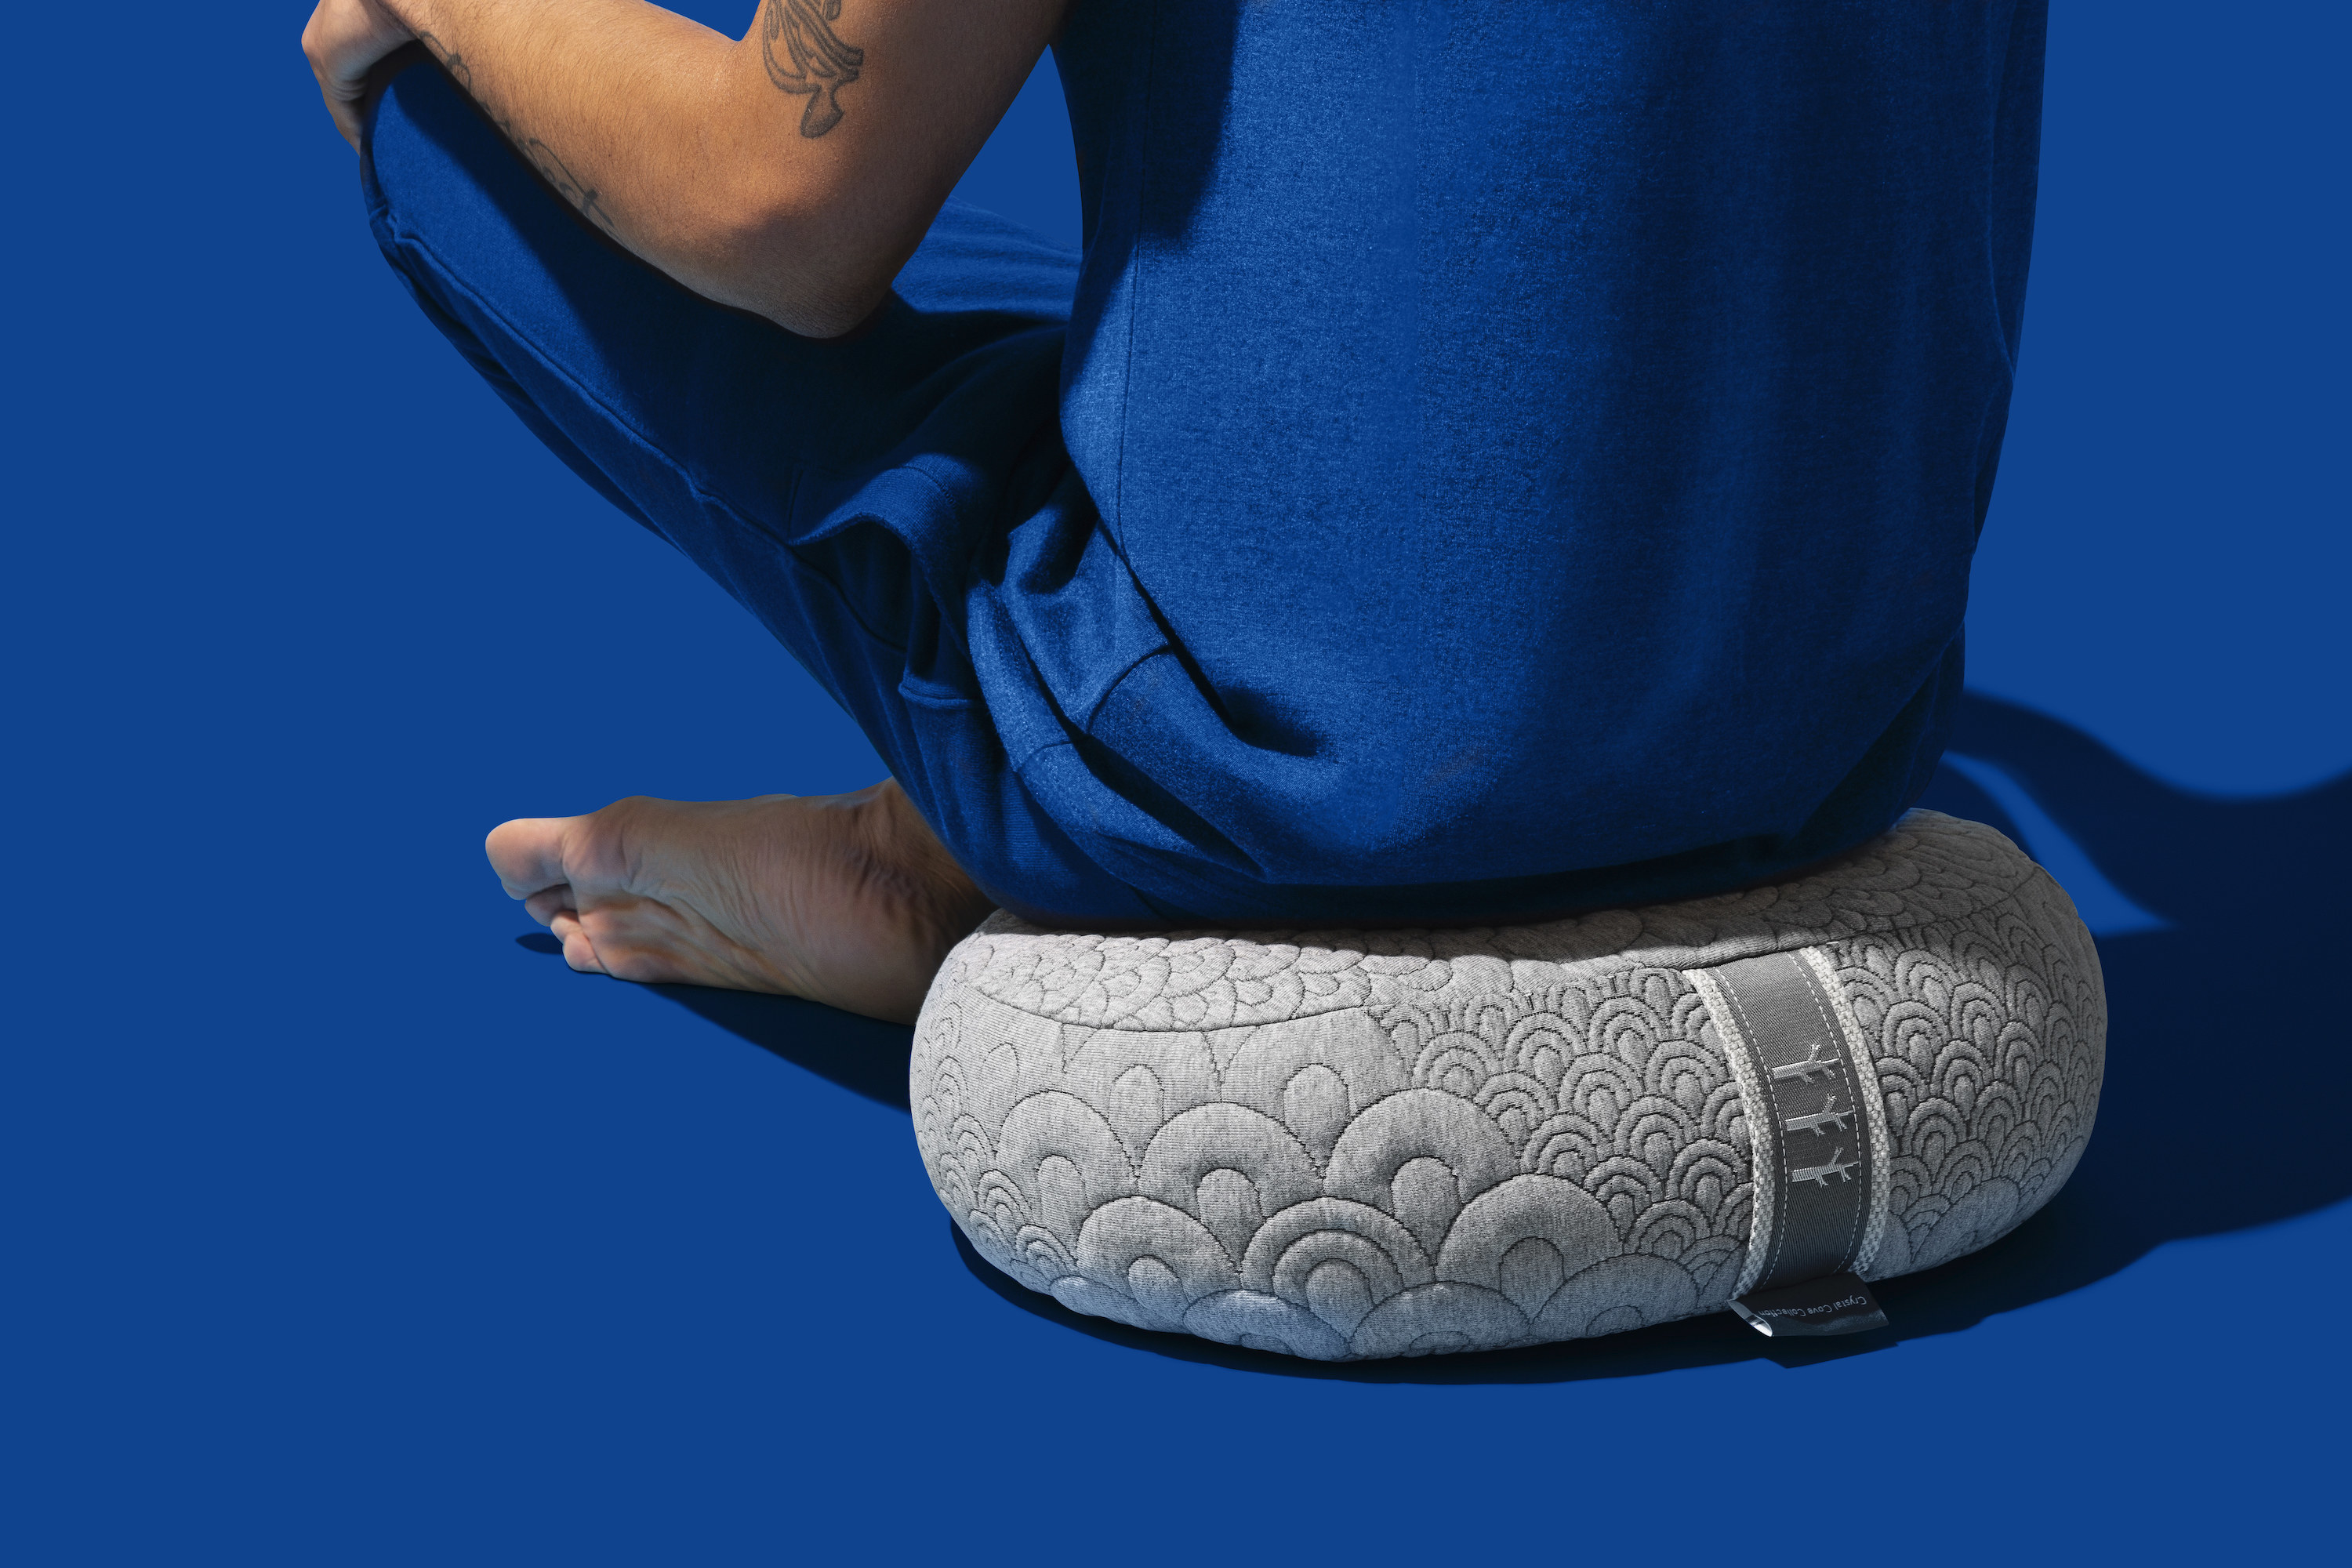 Tush Cush Orthopedic Foam Cushion Review - Sage Meditation